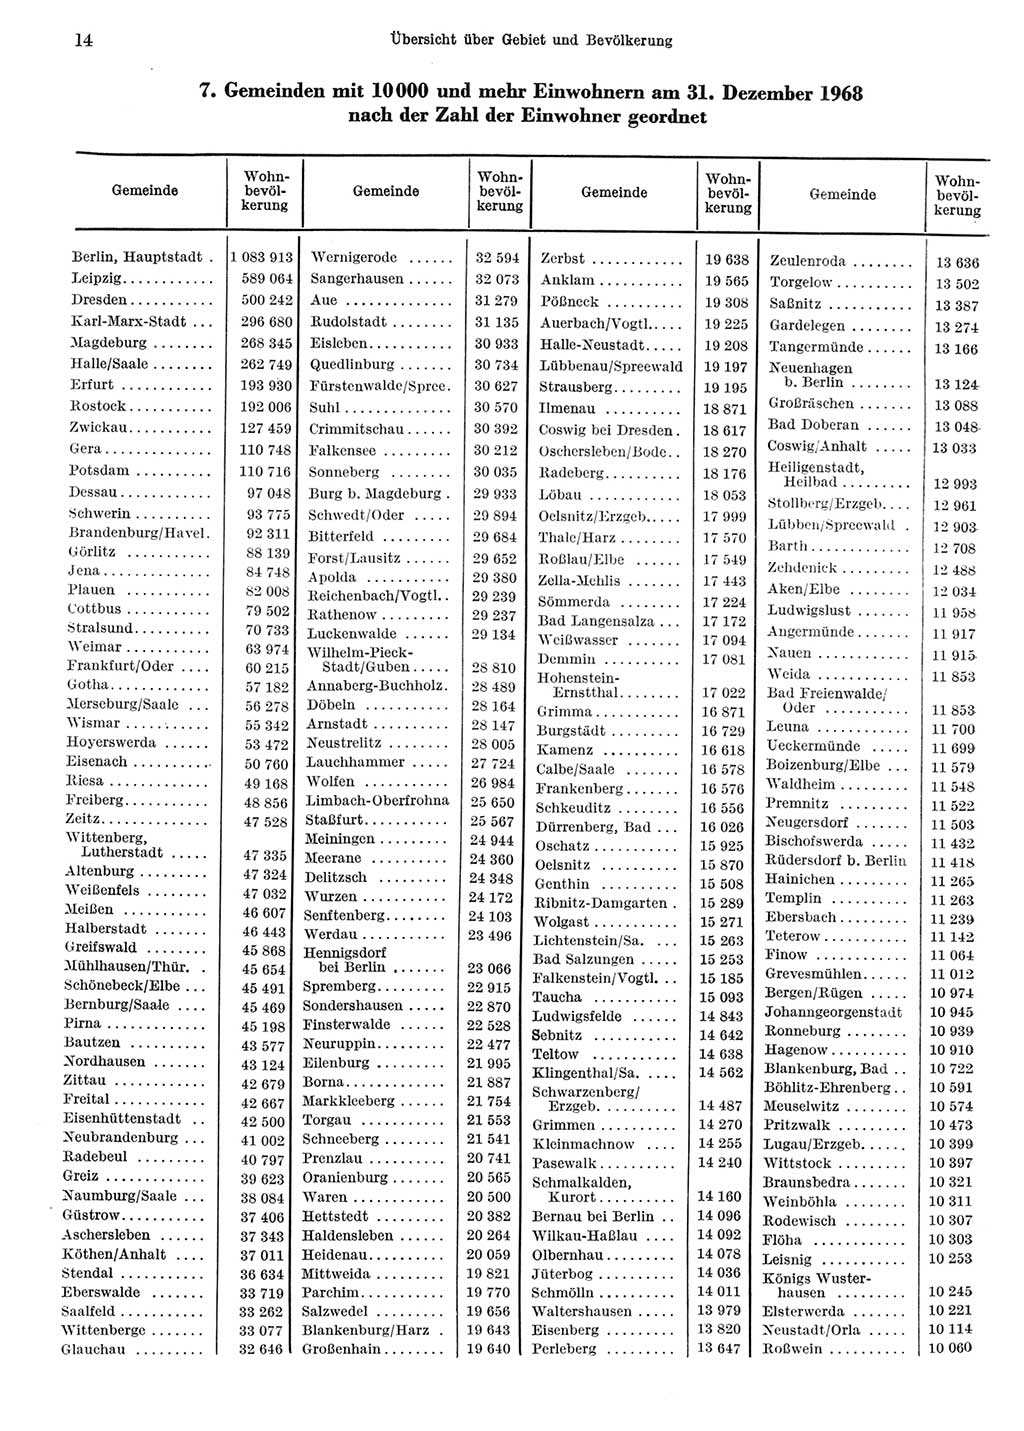 Statistisches Jahrbuch der Deutschen Demokratischen Republik (DDR) 1969, Seite 14 (Stat. Jb. DDR 1969, S. 14)